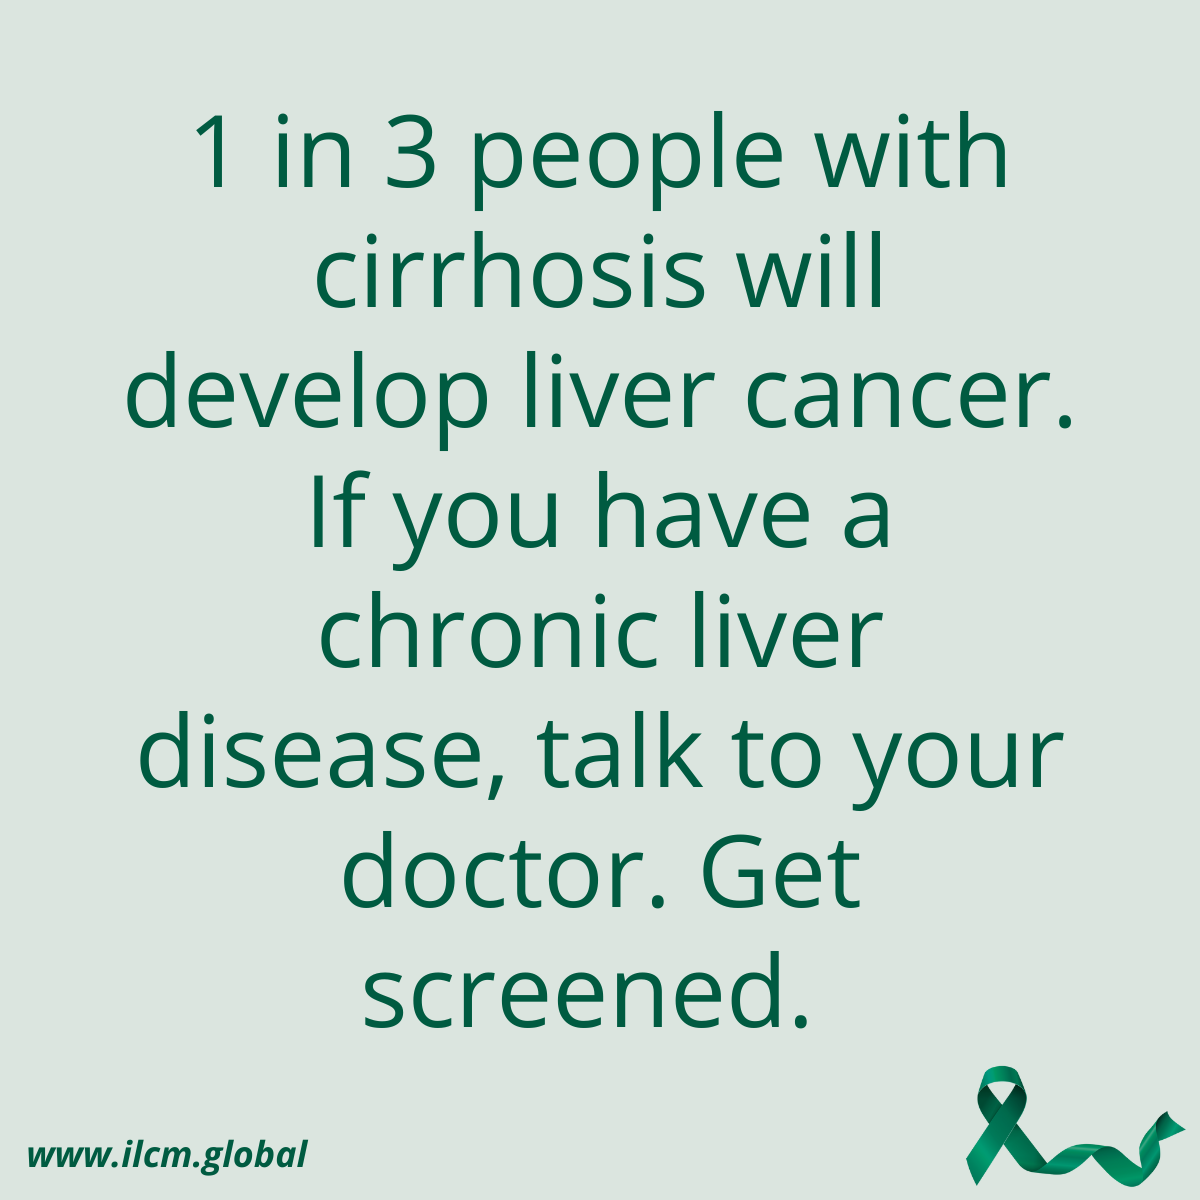 1 in 3 w cirrhosis develop liver cancer